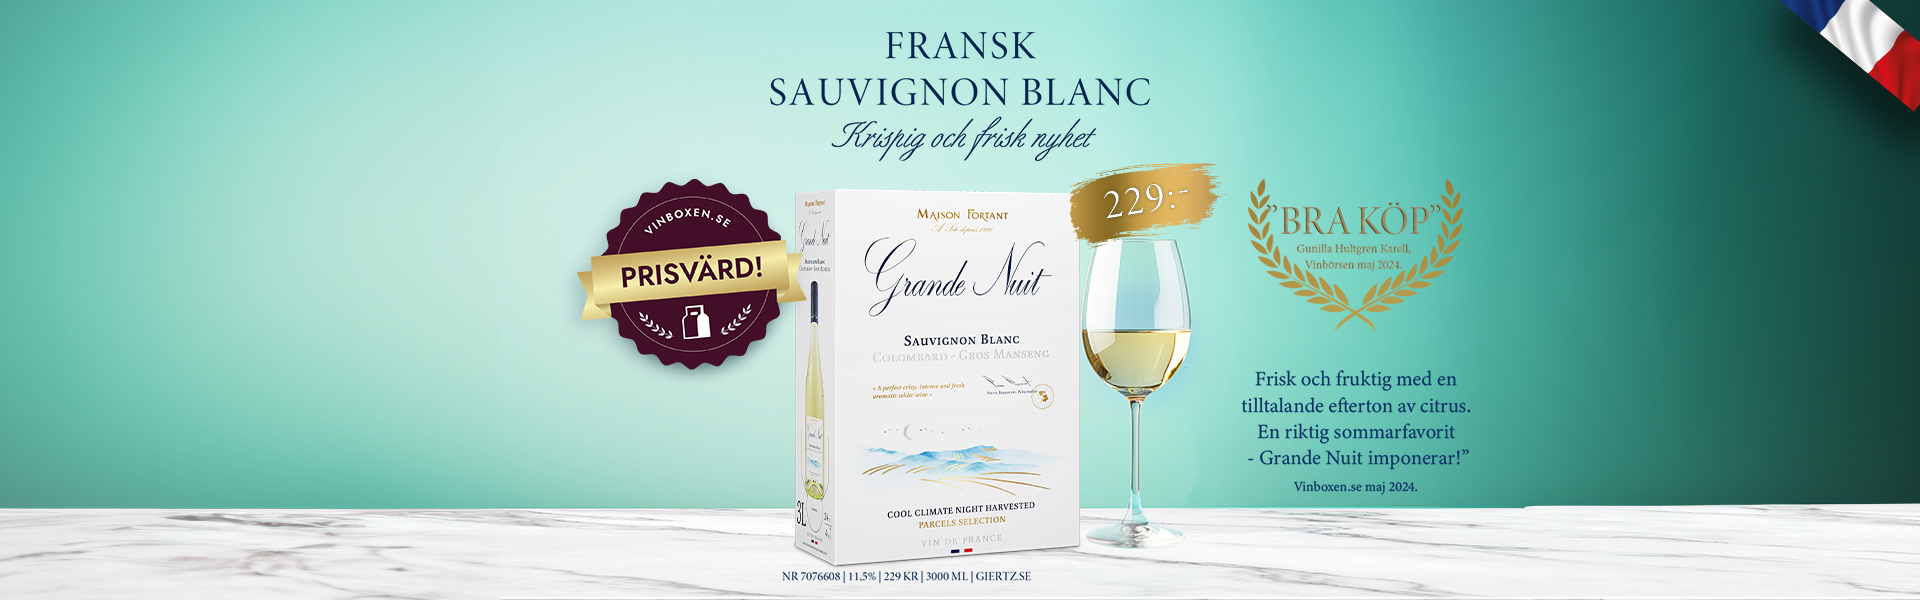 Grande Nuit Sauvignon Blanc Colombard Gros Manseng